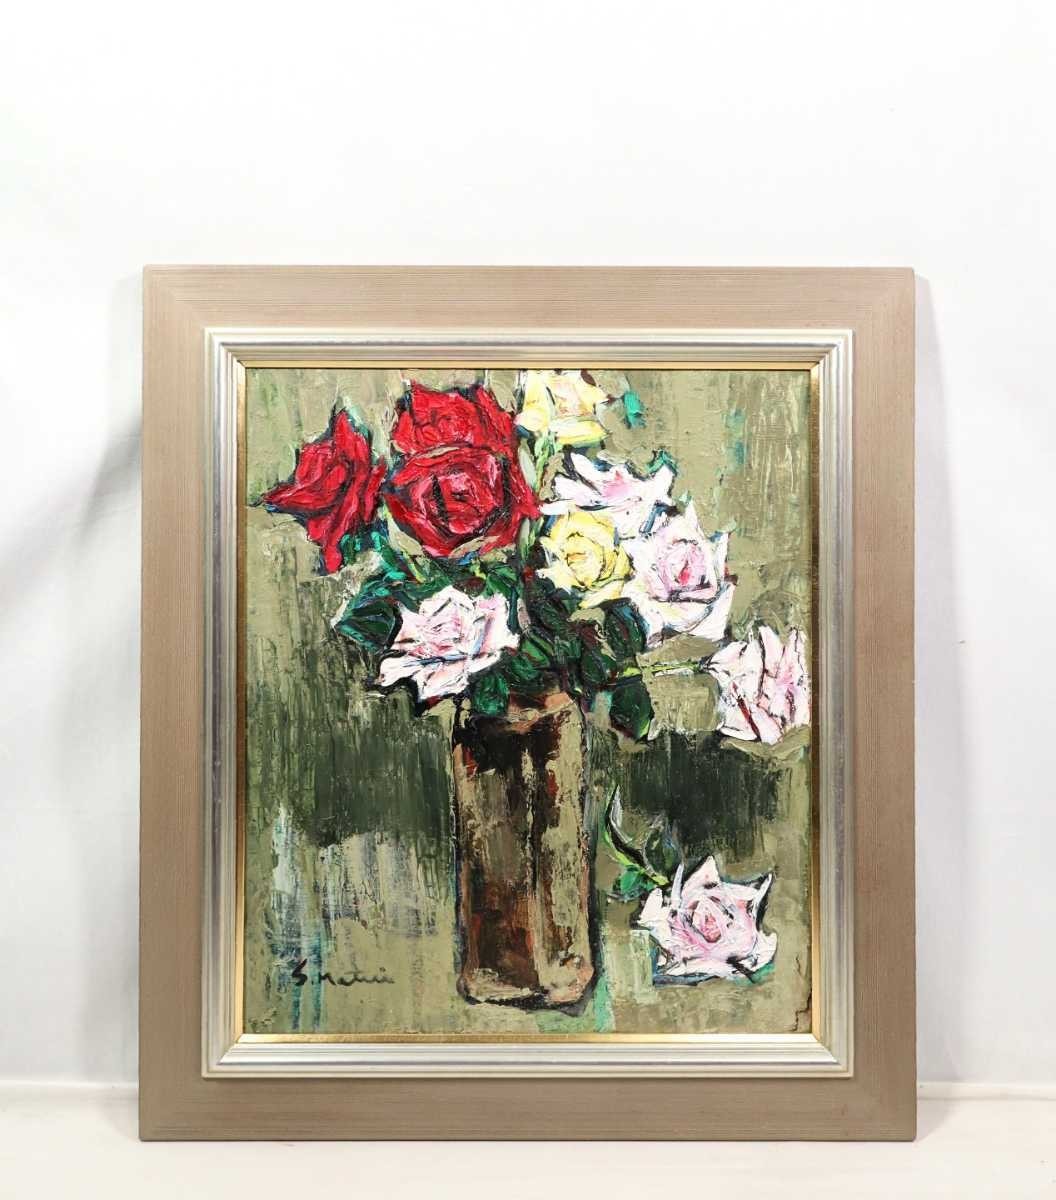 真作 松本碩玄 1970年 油彩「バラ」画寸 24cm×33cm F4 厚塗りマチエール、力強い筆致で生命感溢れる薔薇の花々を描く6573 -  www.ijawnation.org